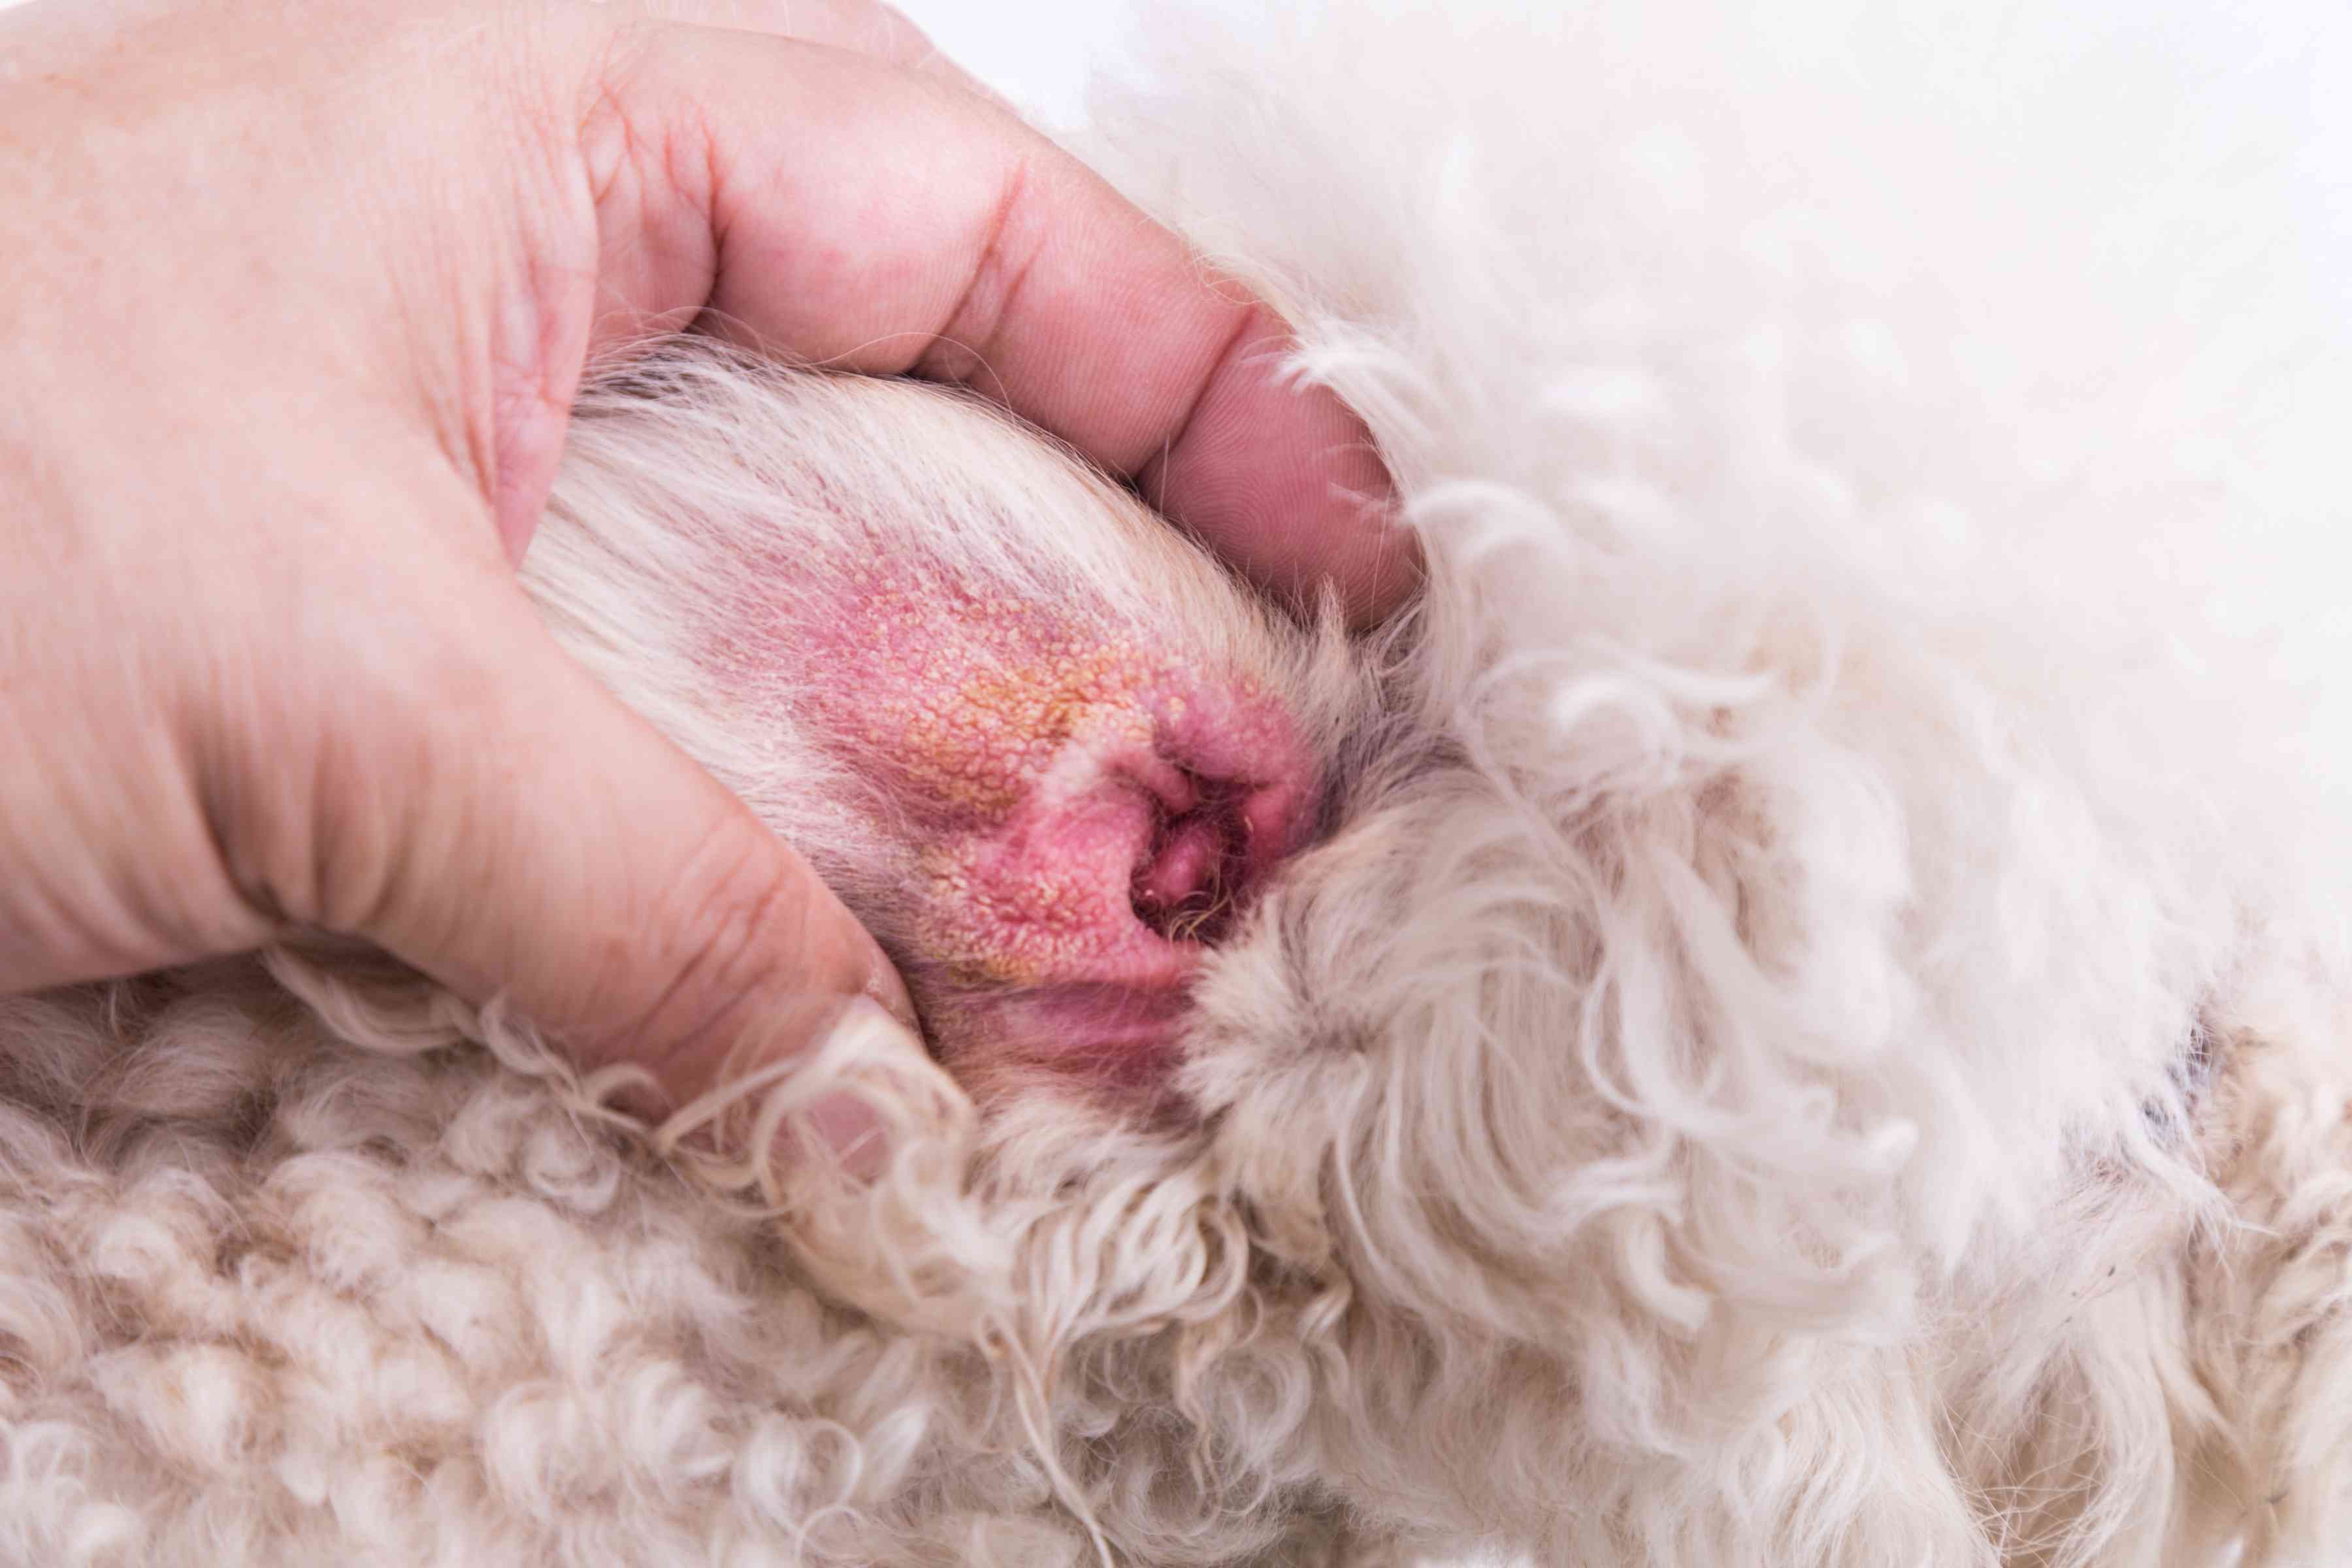 Инфекции ушного дрожжевого грибка у собак